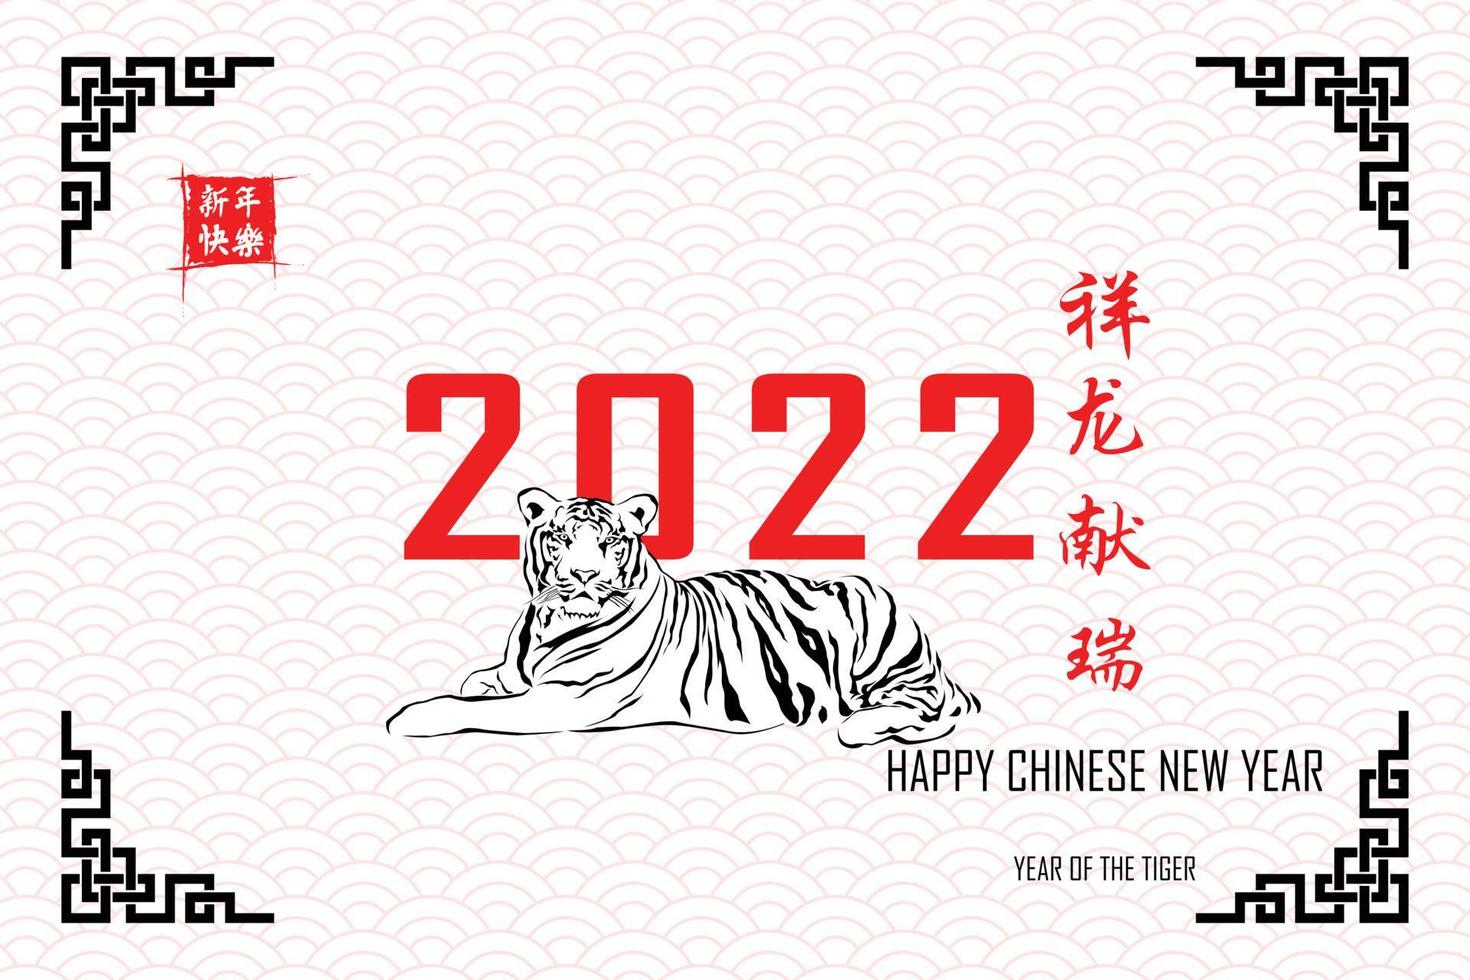 gelukkig Chinees nieuwjaar. chinese kalligrafie 2022 alles gaat heel soepel en kleine chinese bewoording vertaling chinese kalender voor de tijger van tijger 2022 vector